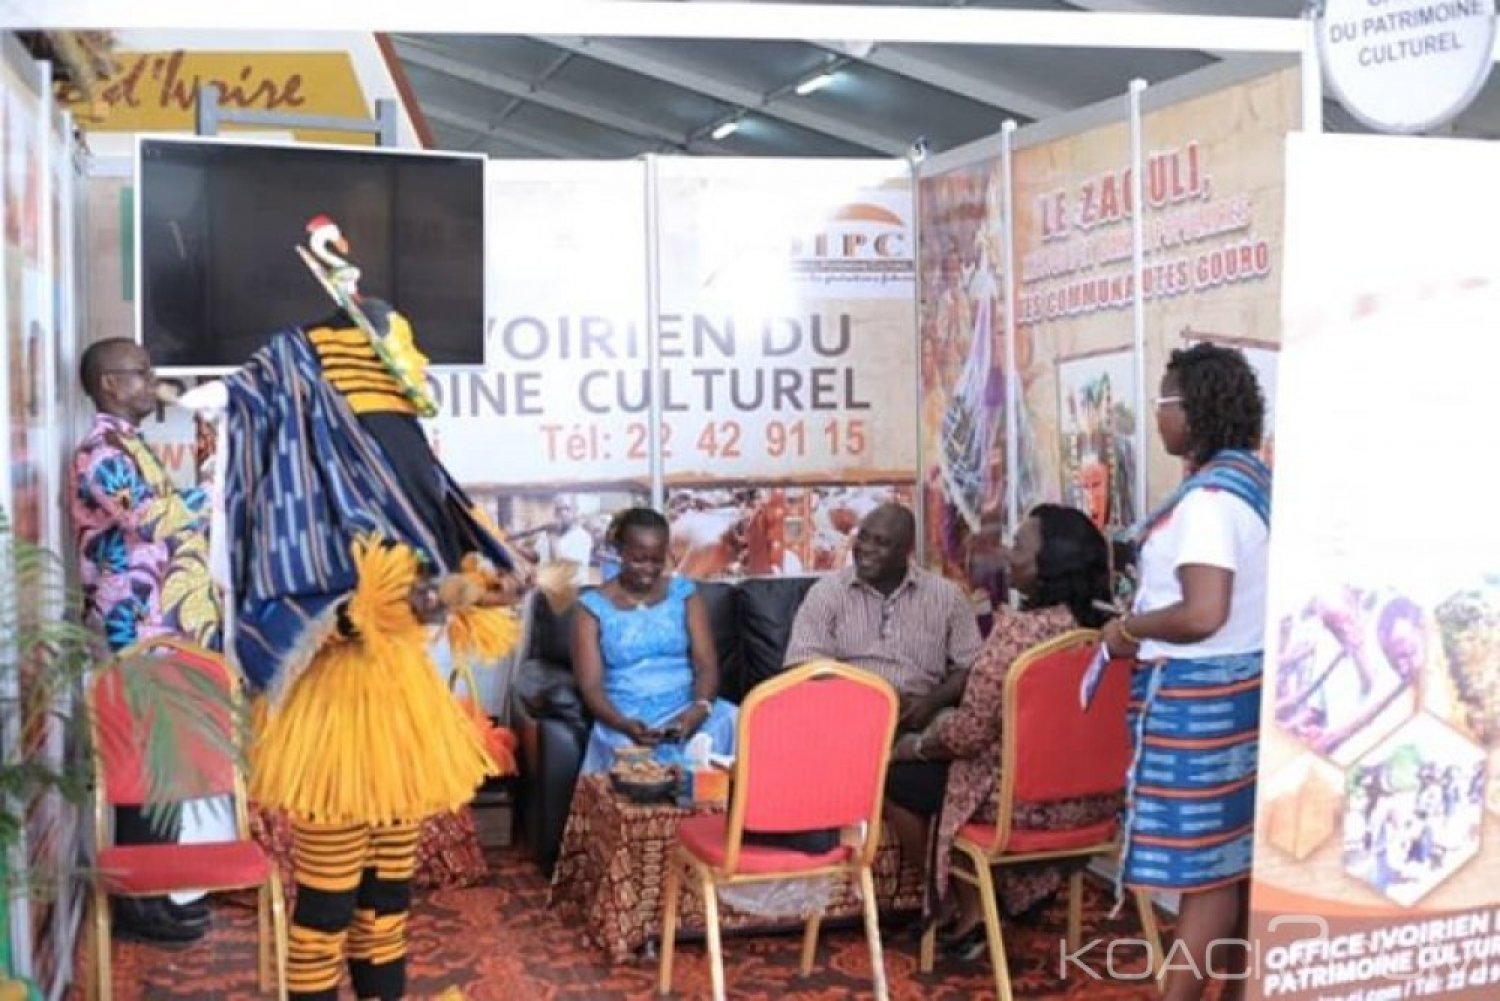 Côte d'Ivoire : Abidjan, l'Office ivoirien du patrimoine culturel fait la promotion de ses activités au SITA